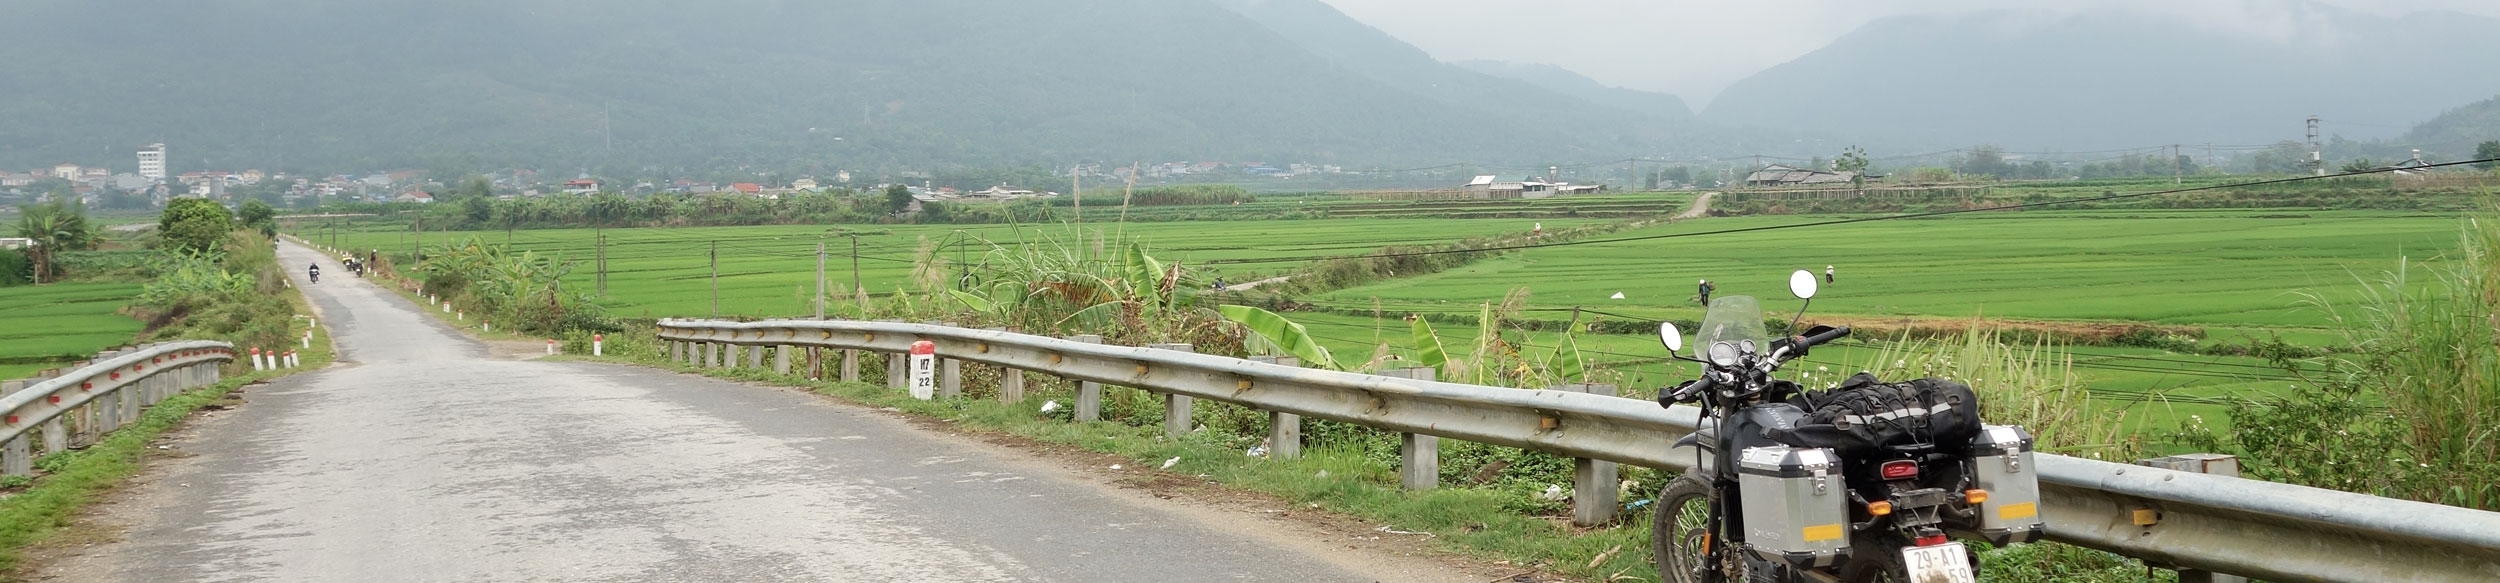 Découverte du Vietnam à moto avec Carnets d'Asie